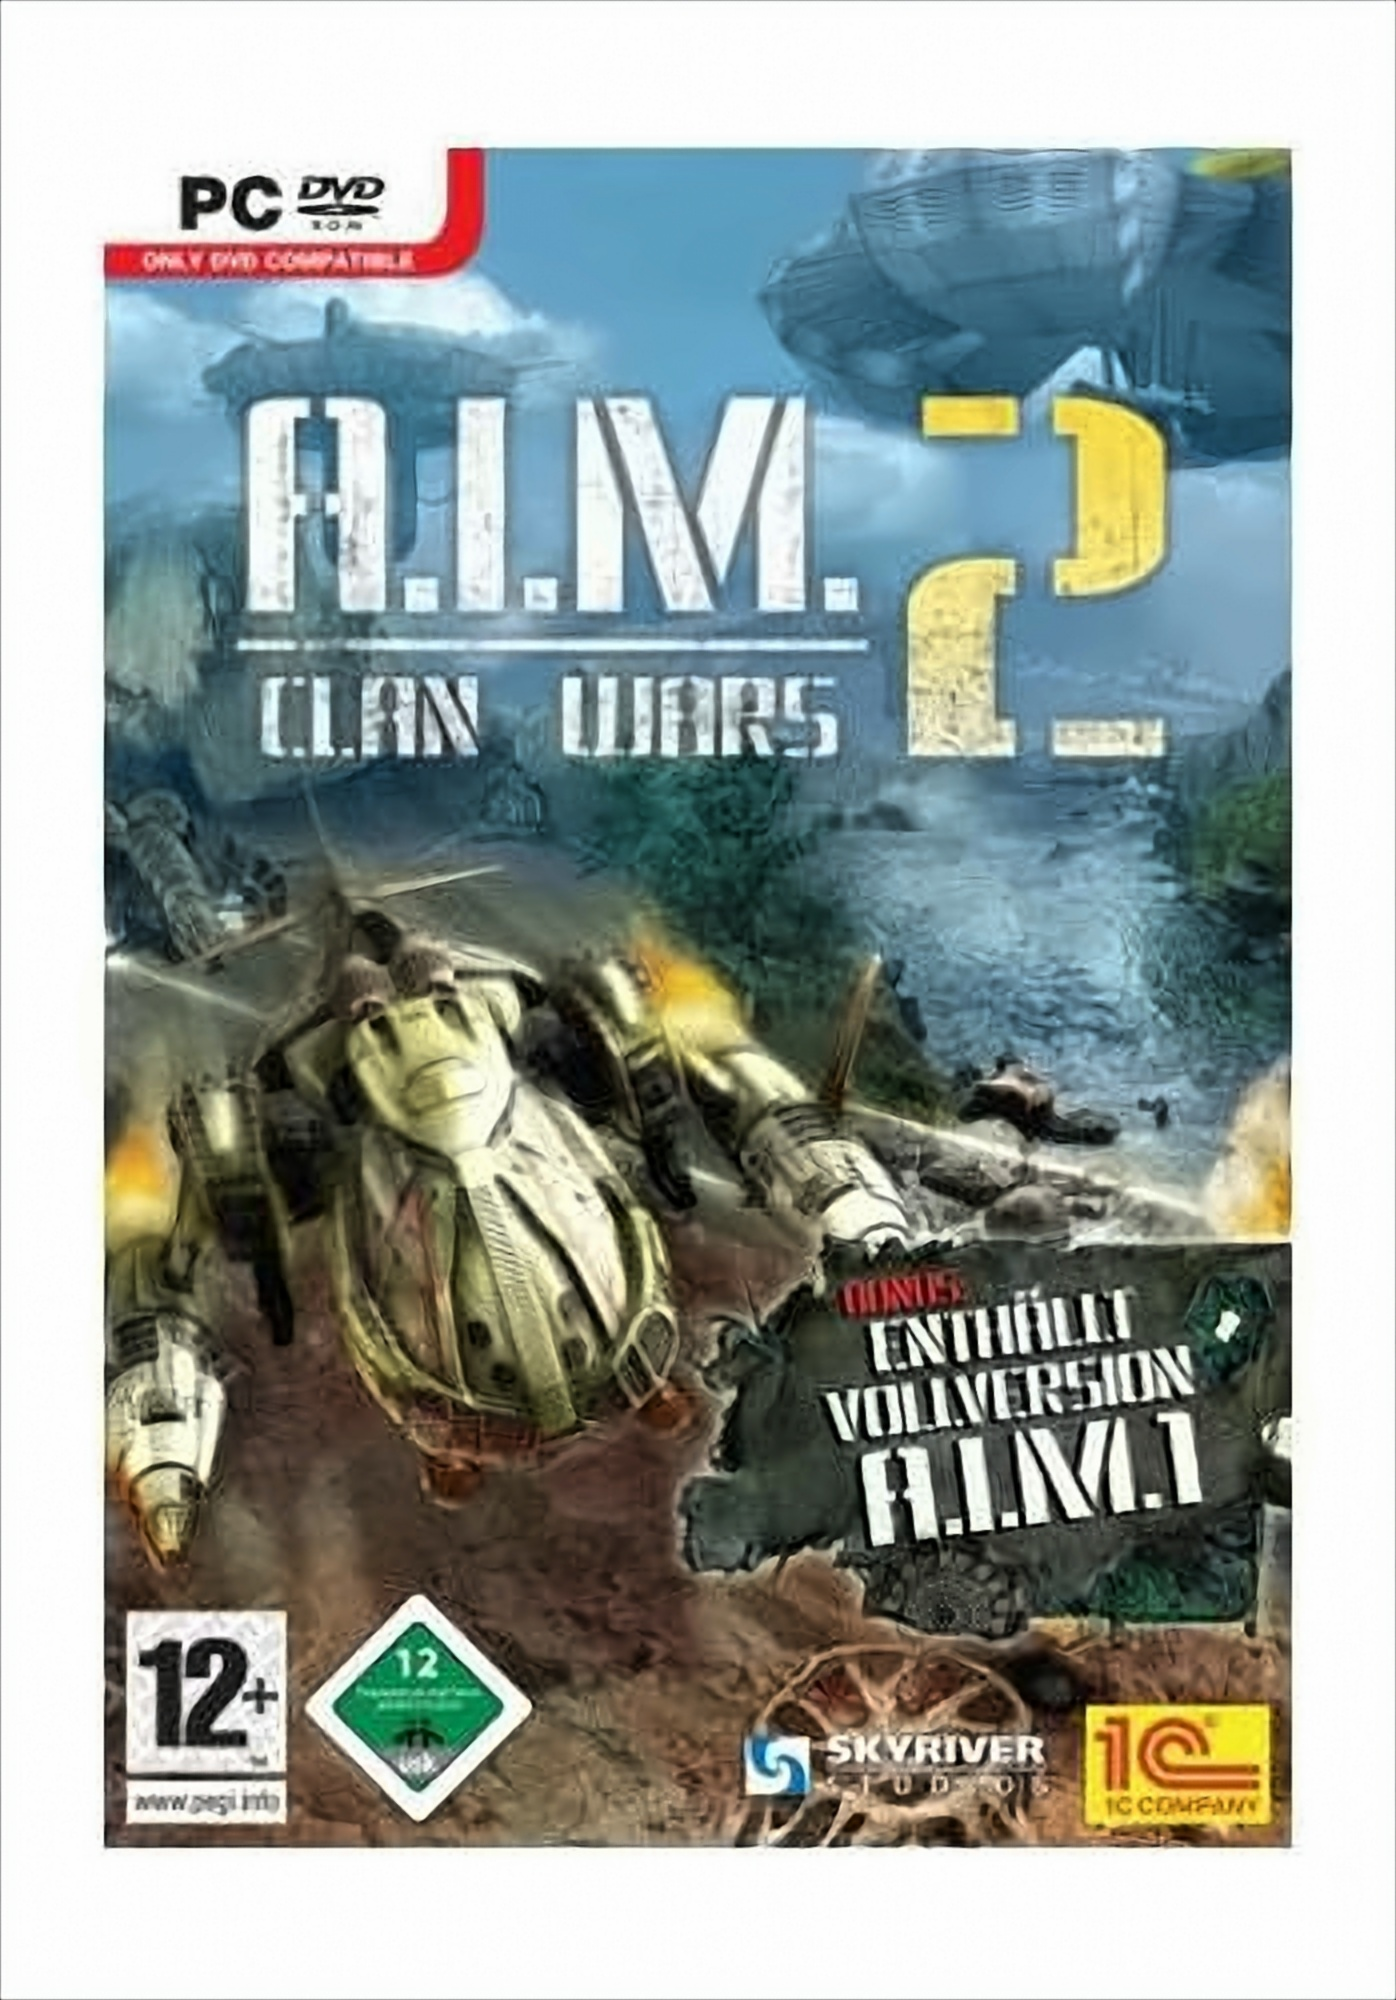 Clan [PC] - - A.I.M. 2 Wars